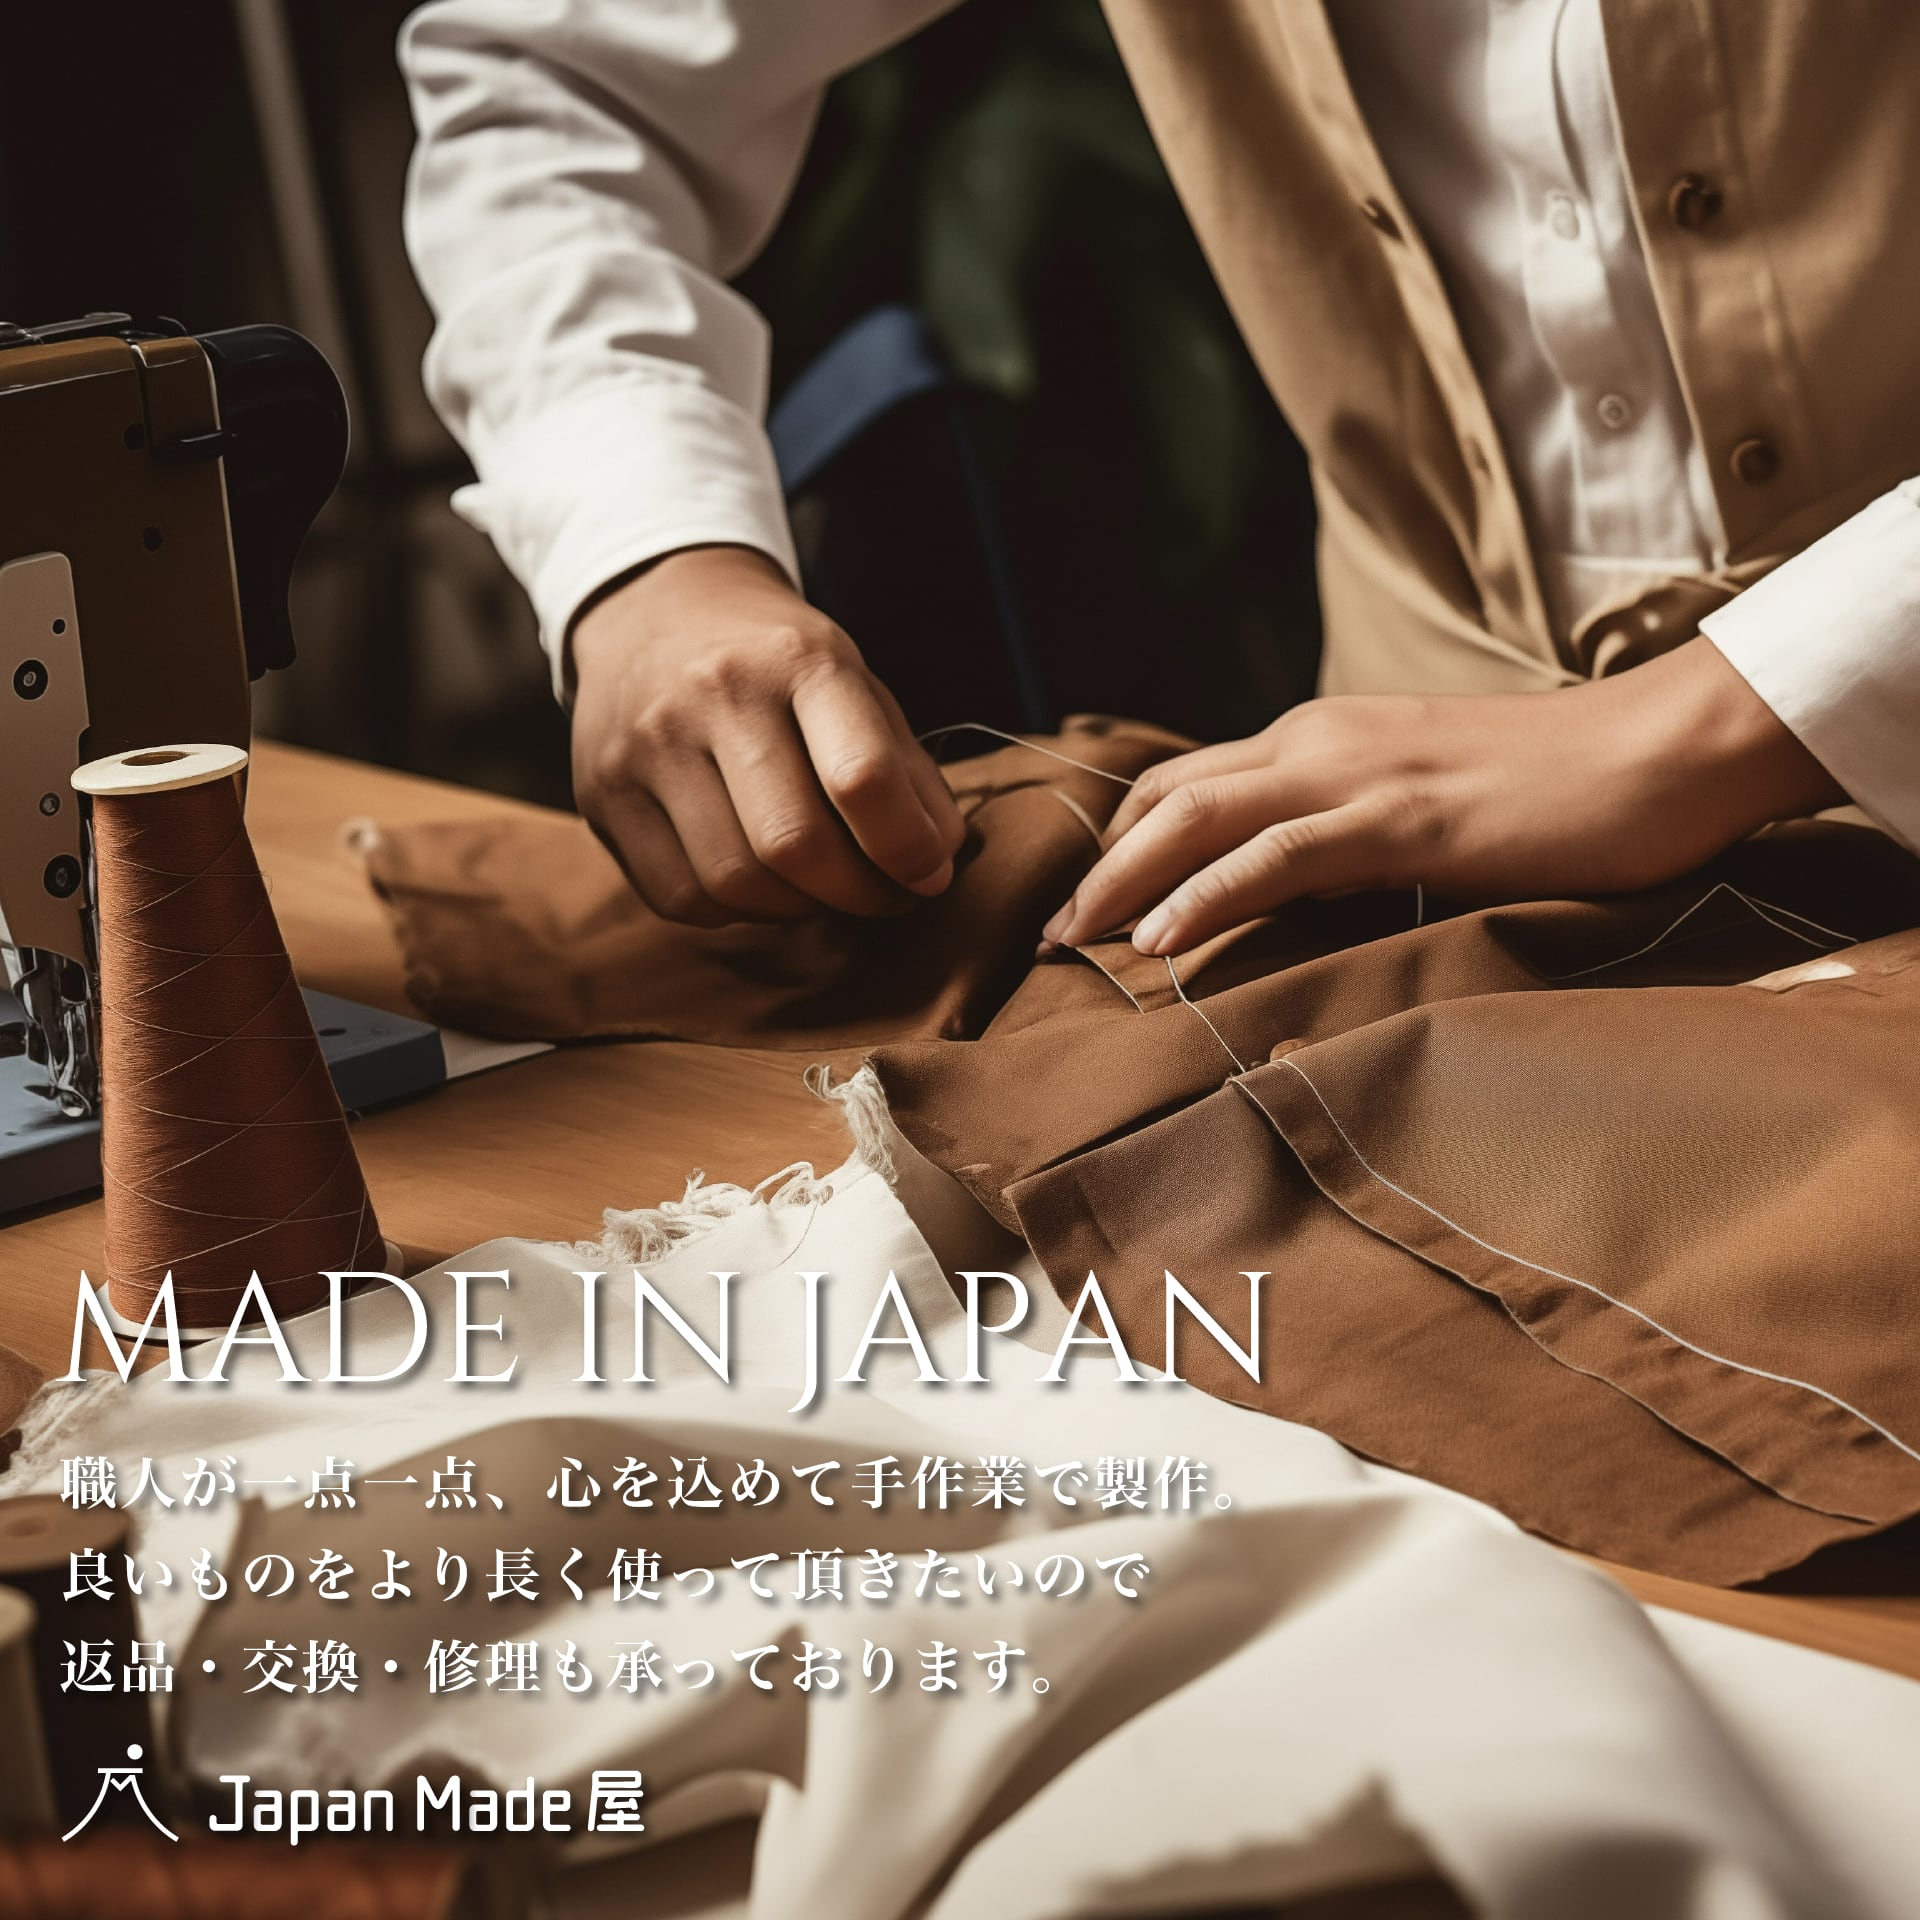 いつかは、究極の黒パン – Japan Made屋